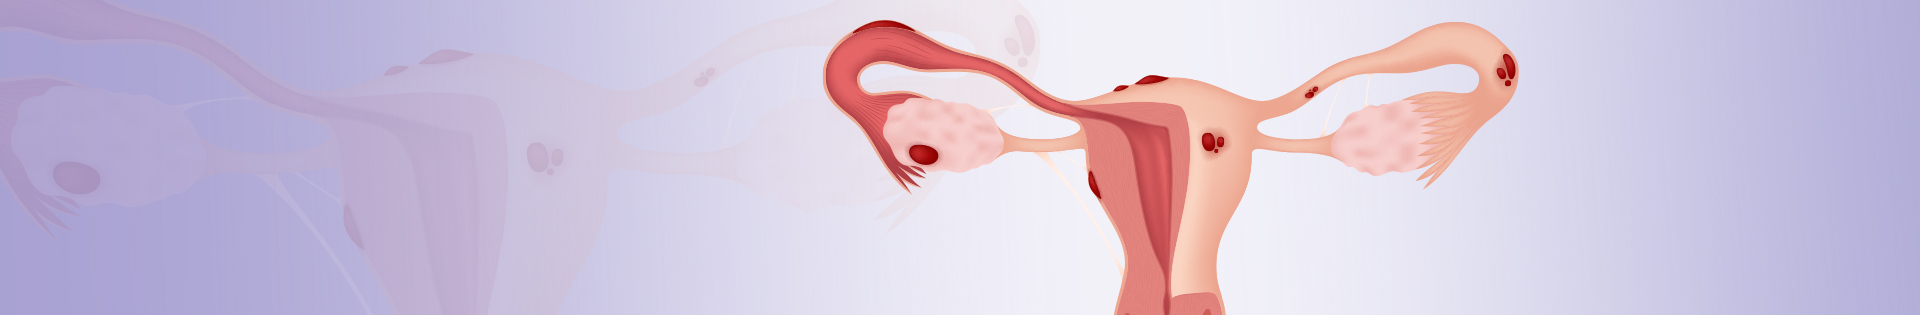 Endometriose: conheça os tipos da doença